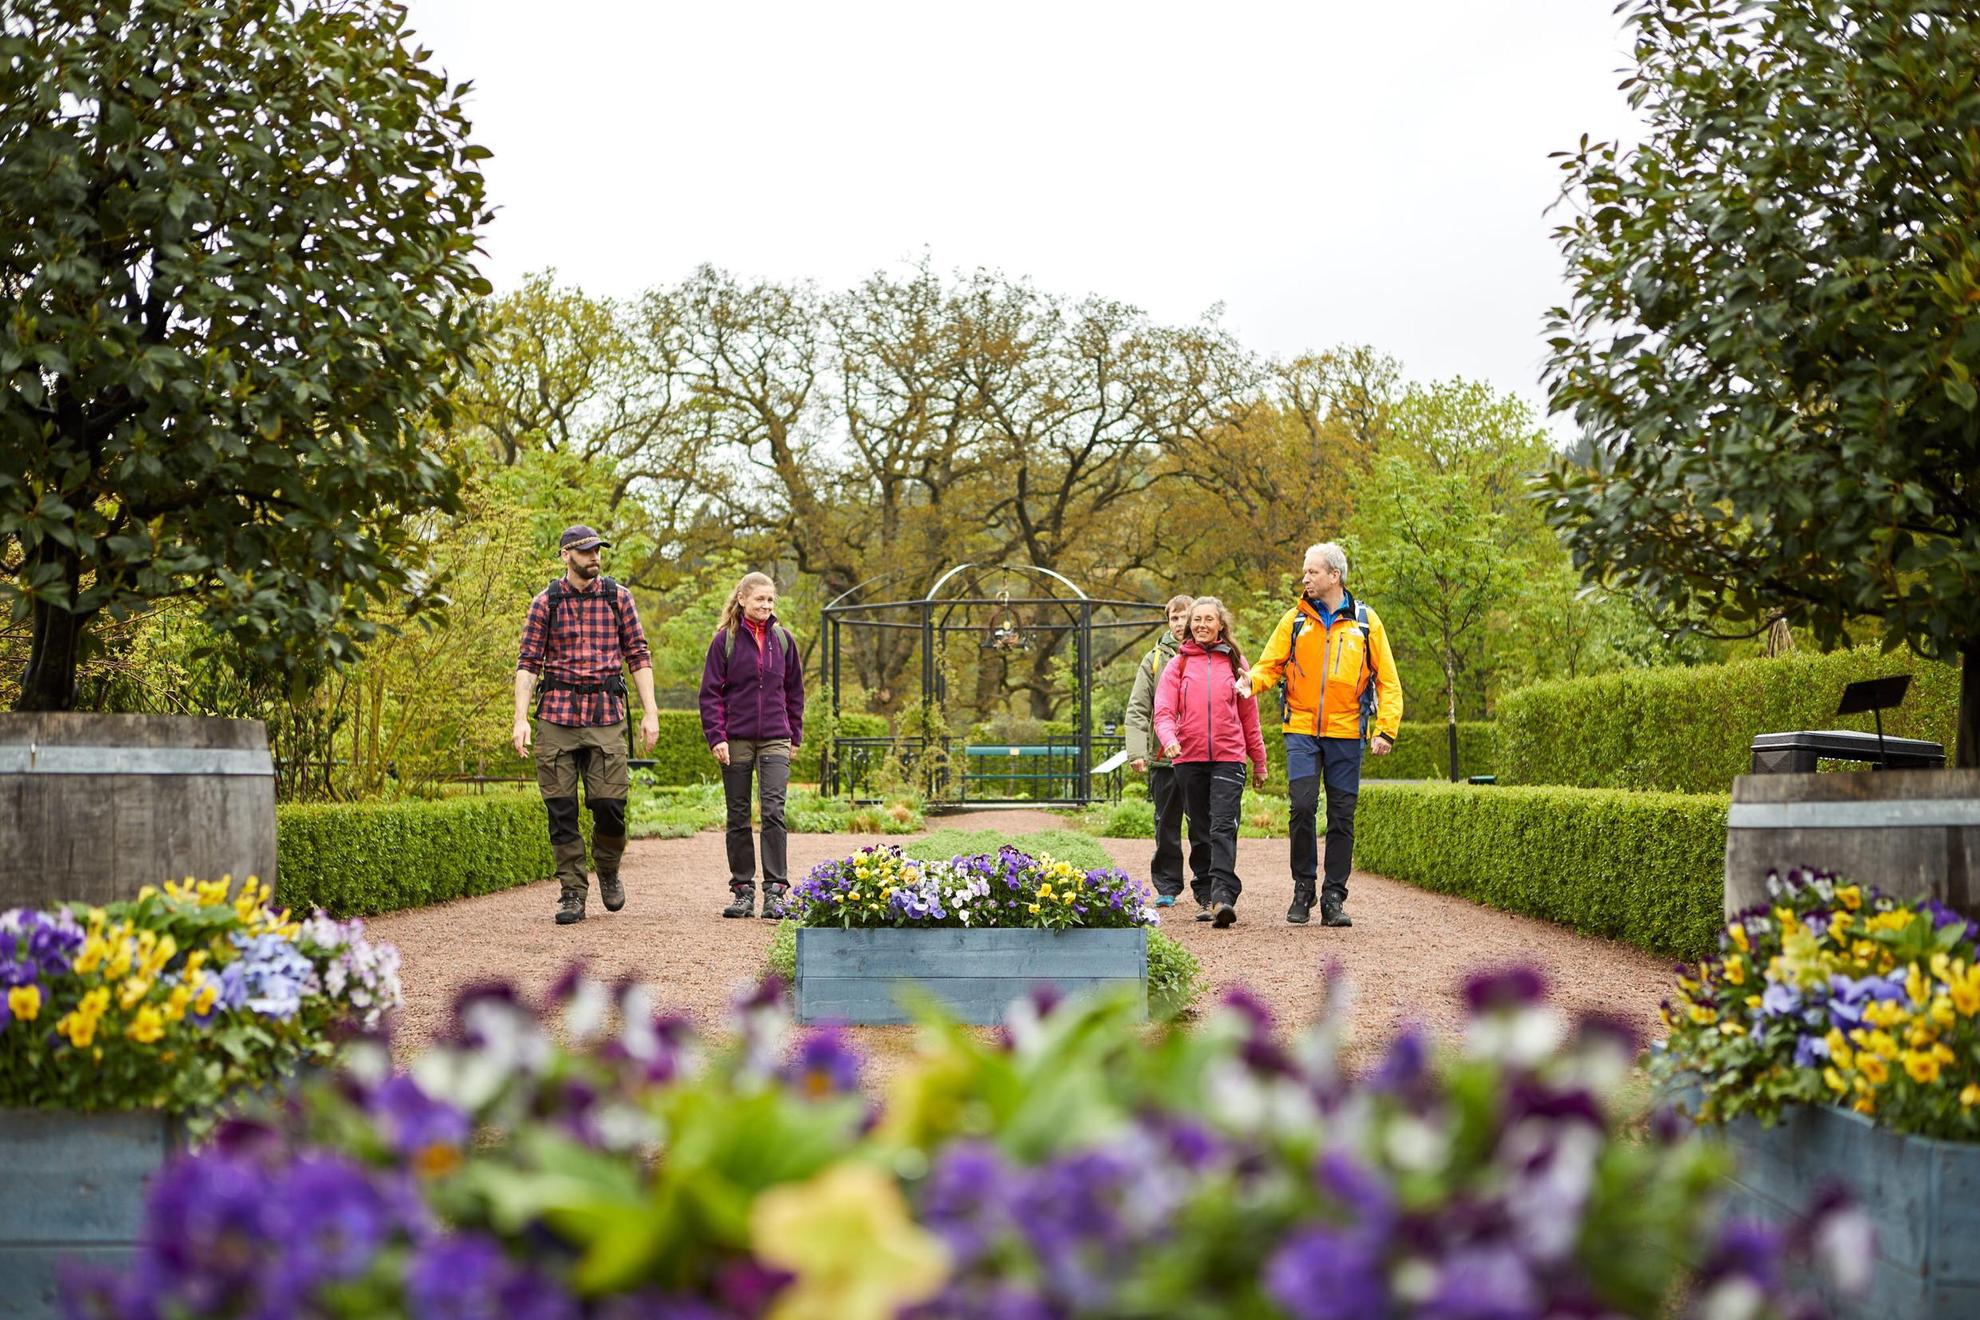 Un groupe de cinq personnes marchent dans un joli jardin. Au premier plan, il y a des fleurs violettes et jaunes. En arrière-plan, on voit des arbres et de la verdure.